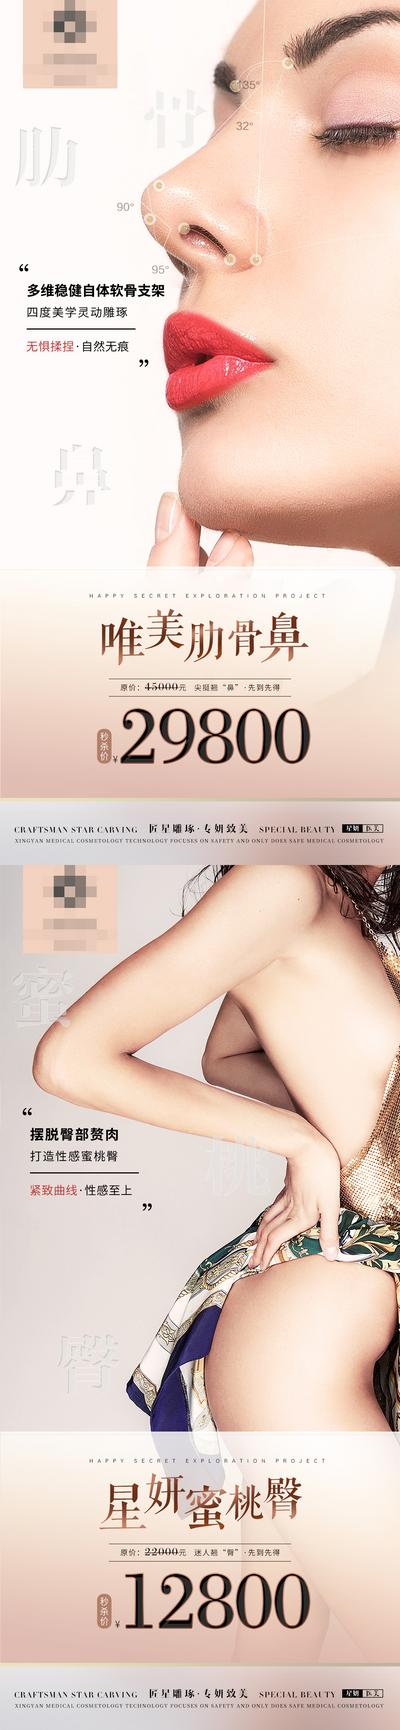 【南门网】海报 医美 整形 促销 优惠 眼鼻 臀部 翘臀 模特 系列